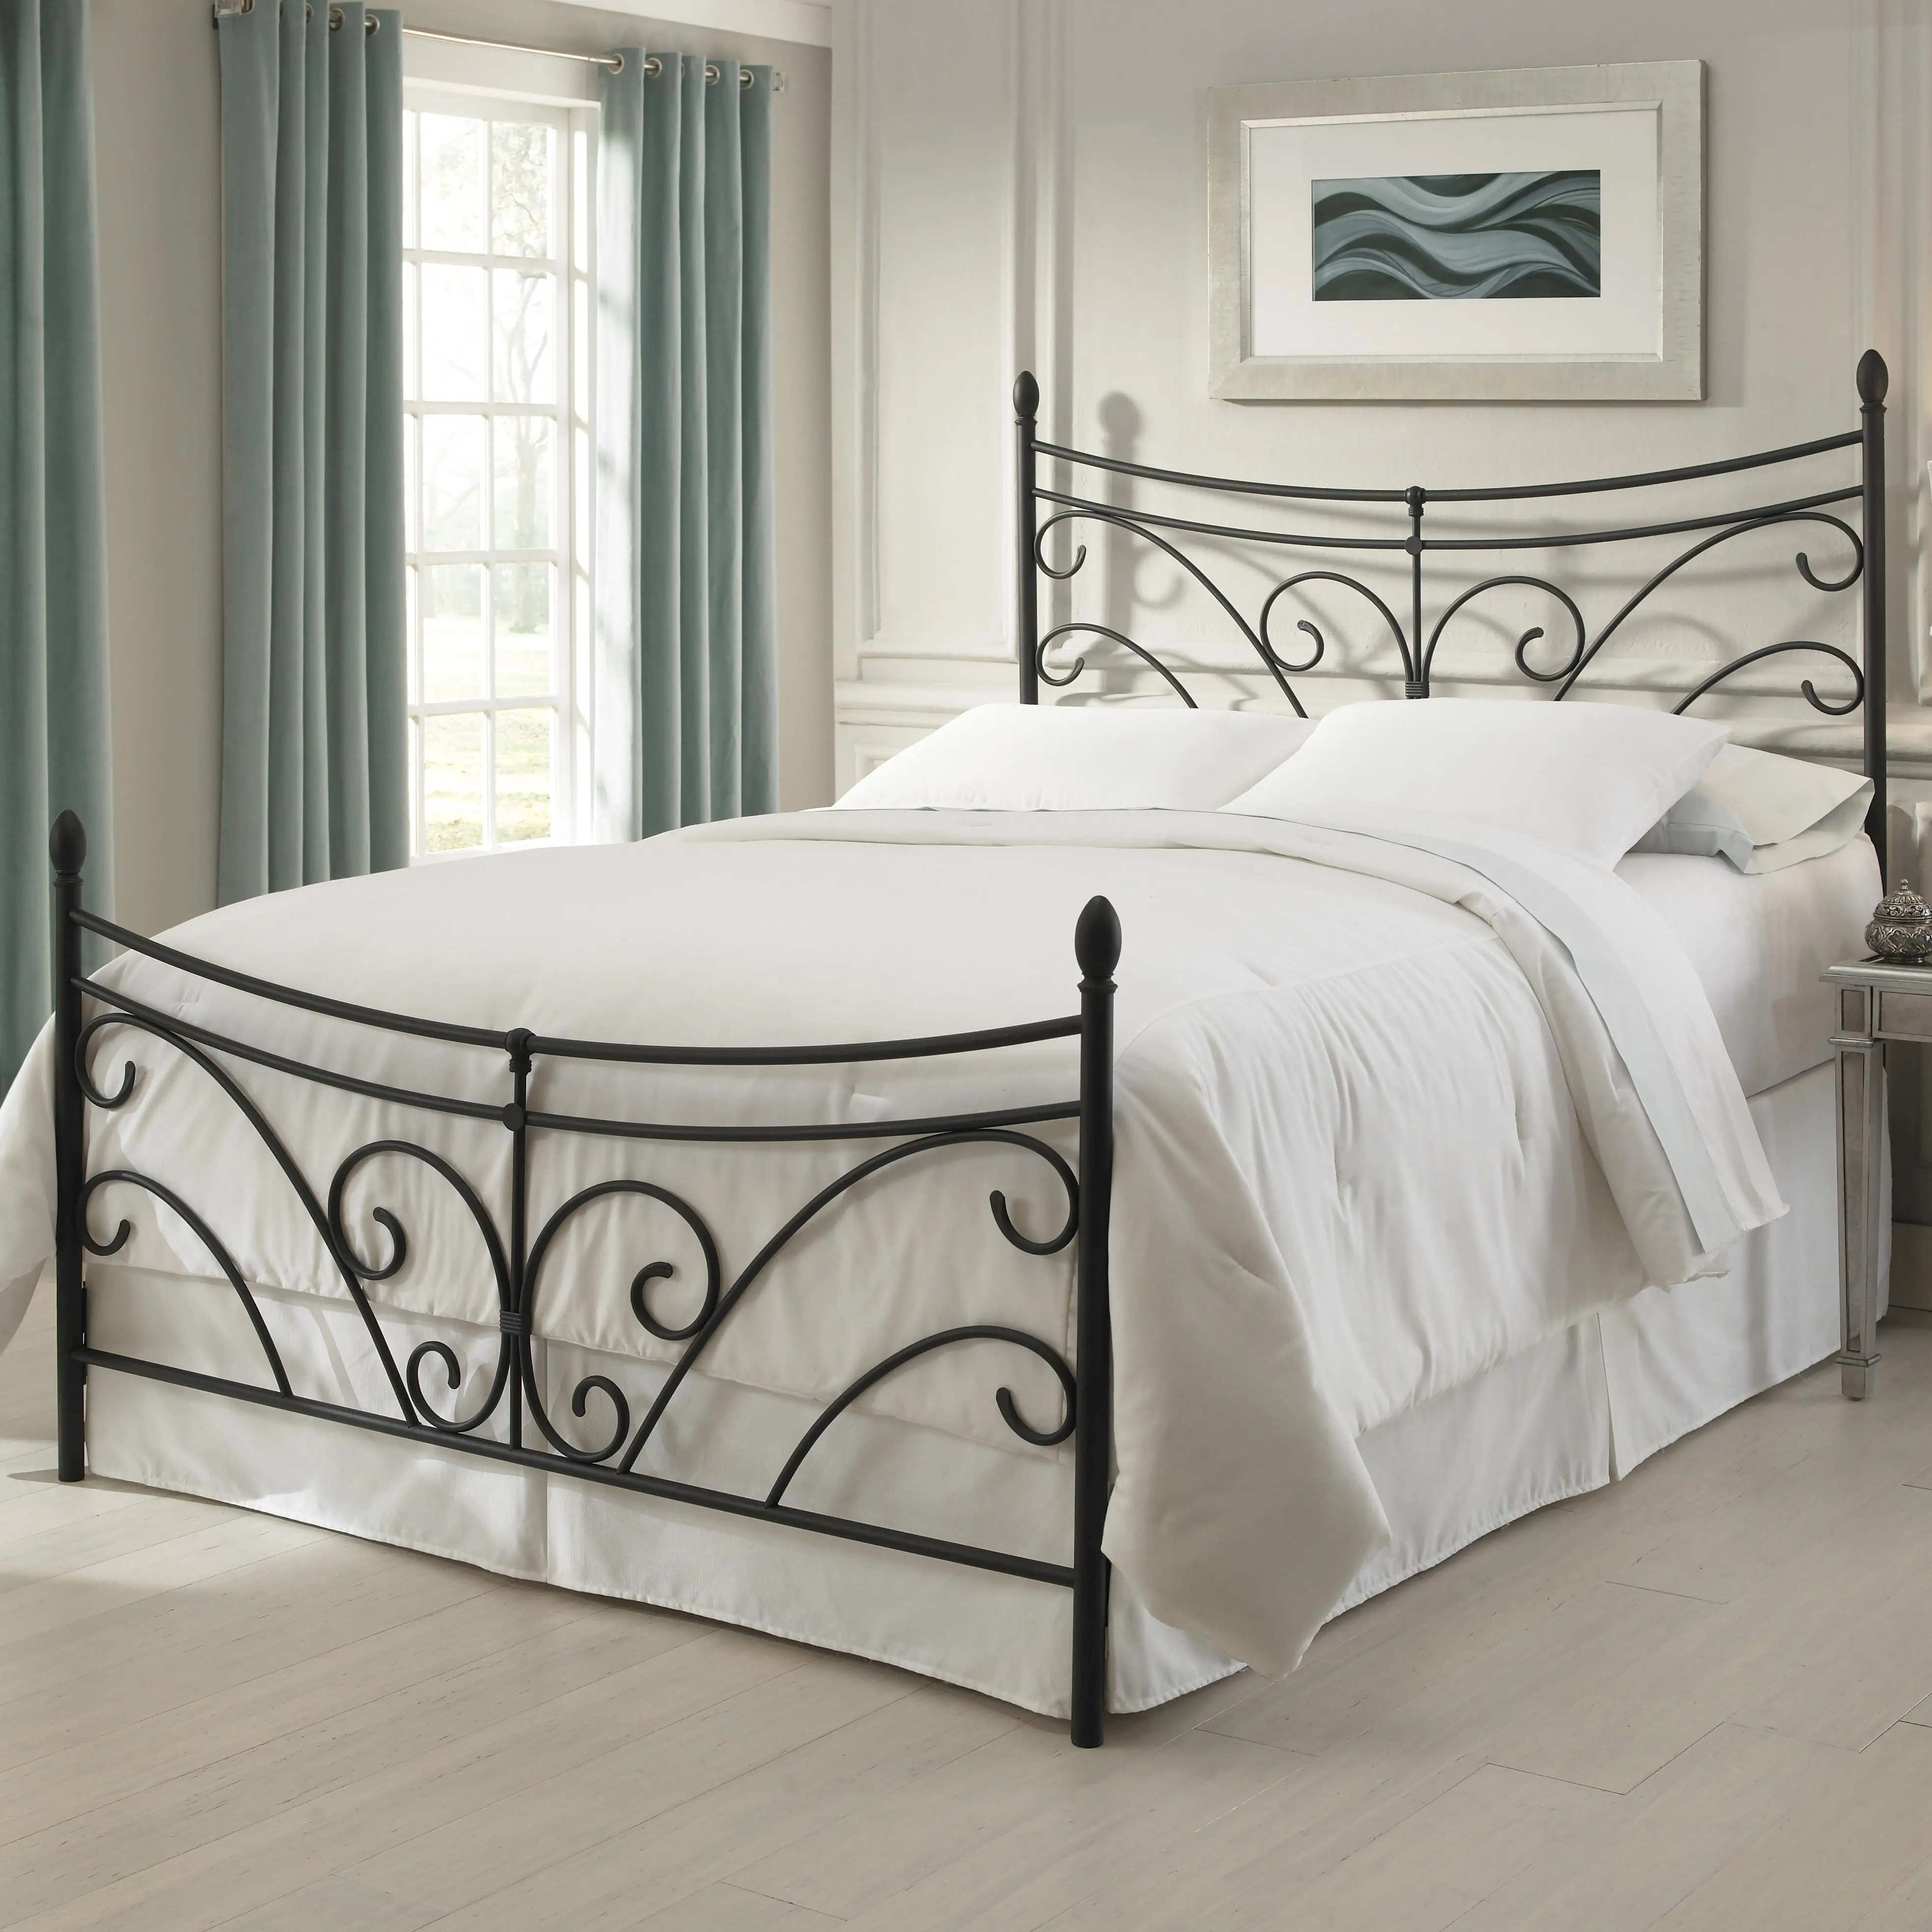 أثاث غرفة نوم جديد أنيقة تصميم الملك حجم كريم اللون المطاوع الحديد سرير معدني